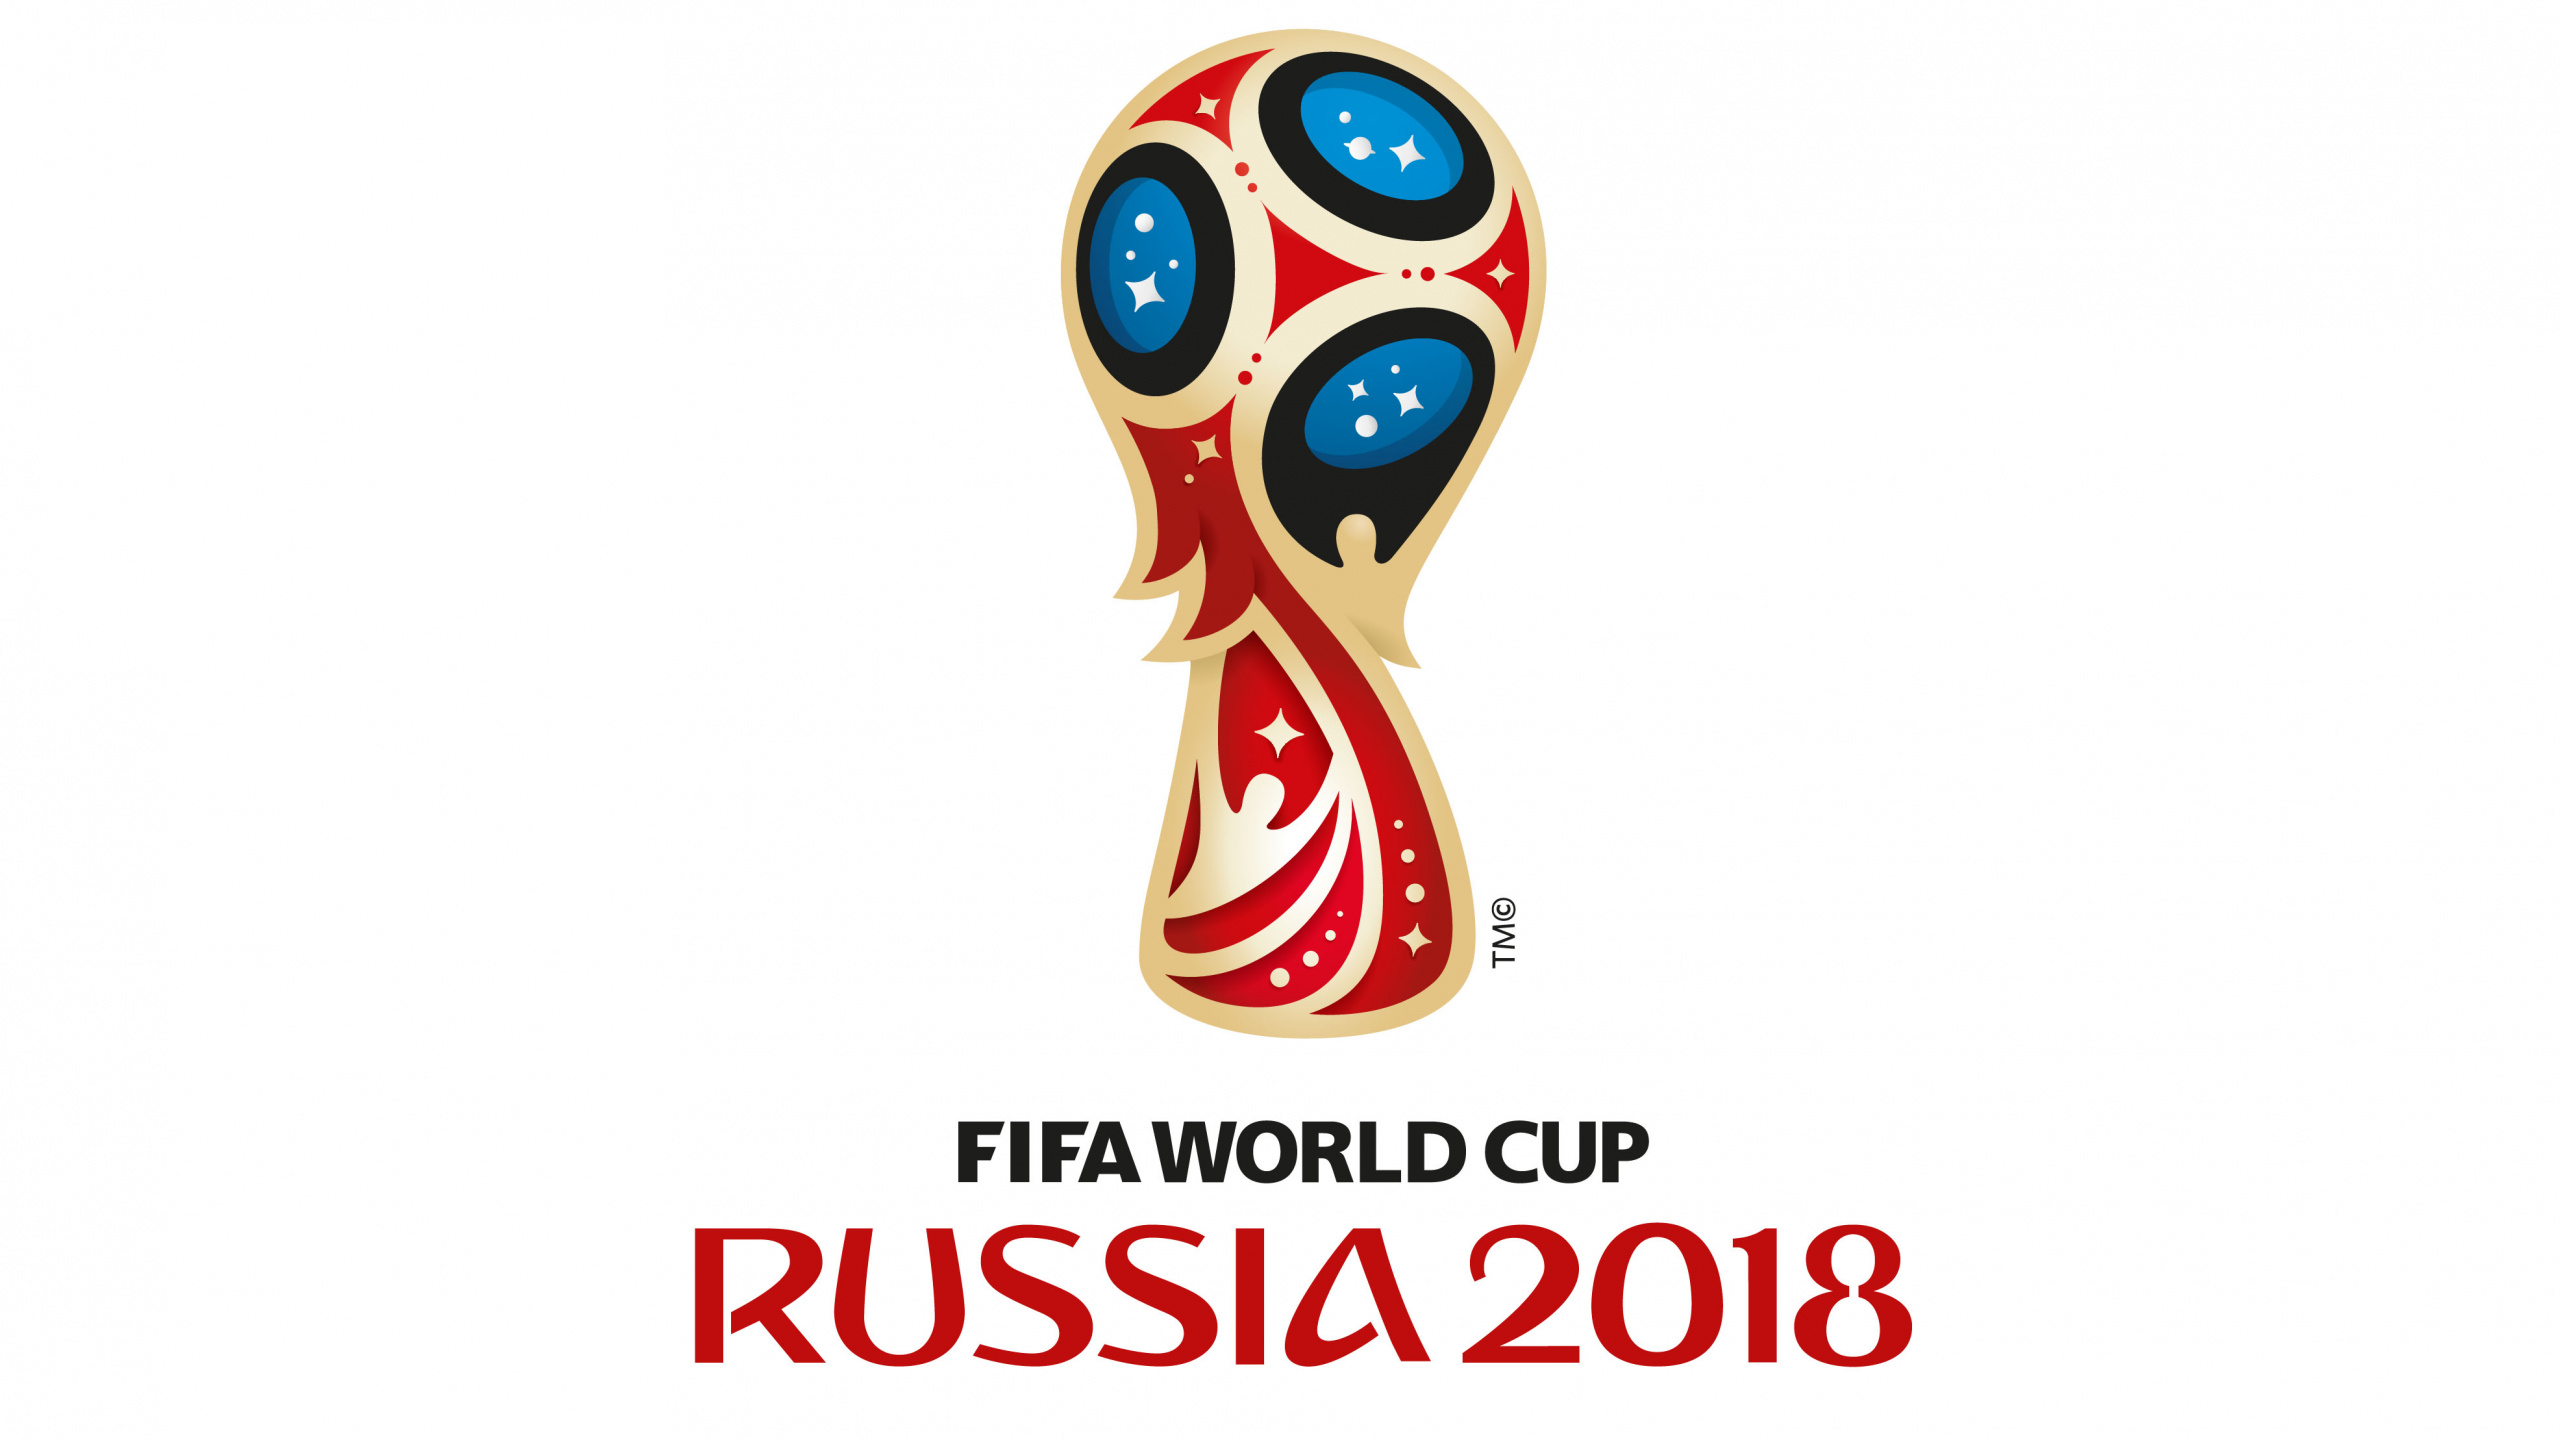 2018年世界杯, 国际足联, 品牌, 俄罗斯 壁纸 2560x1440 允许